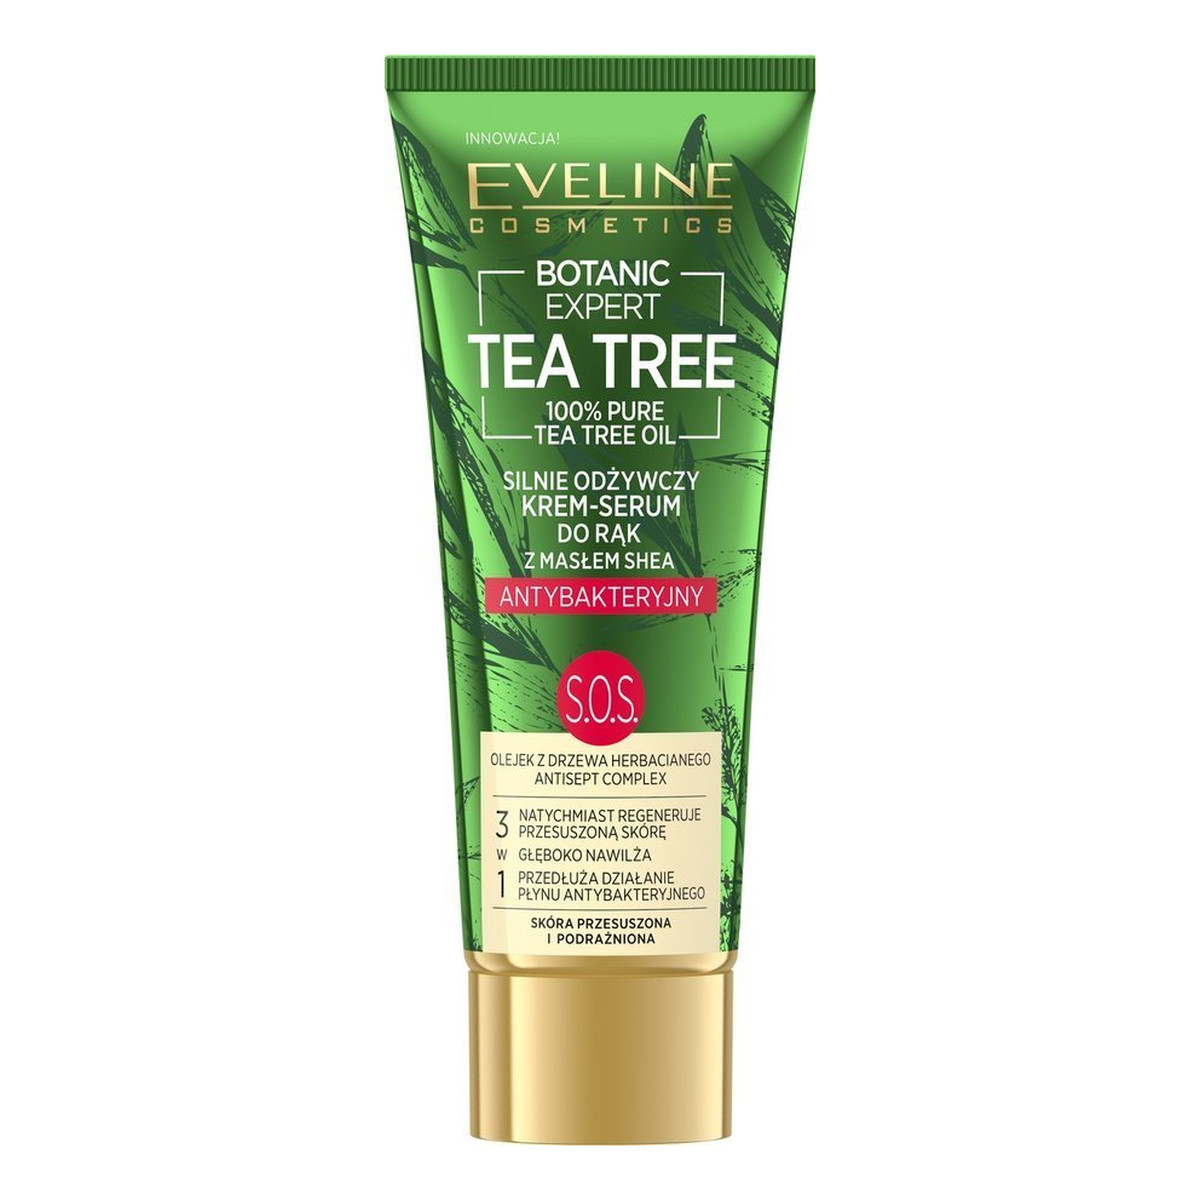 Eveline Botanic Expert Tea Tree Krem-serum do rąk antybakteryjny silnie odżywczy S.O.S. 40ml